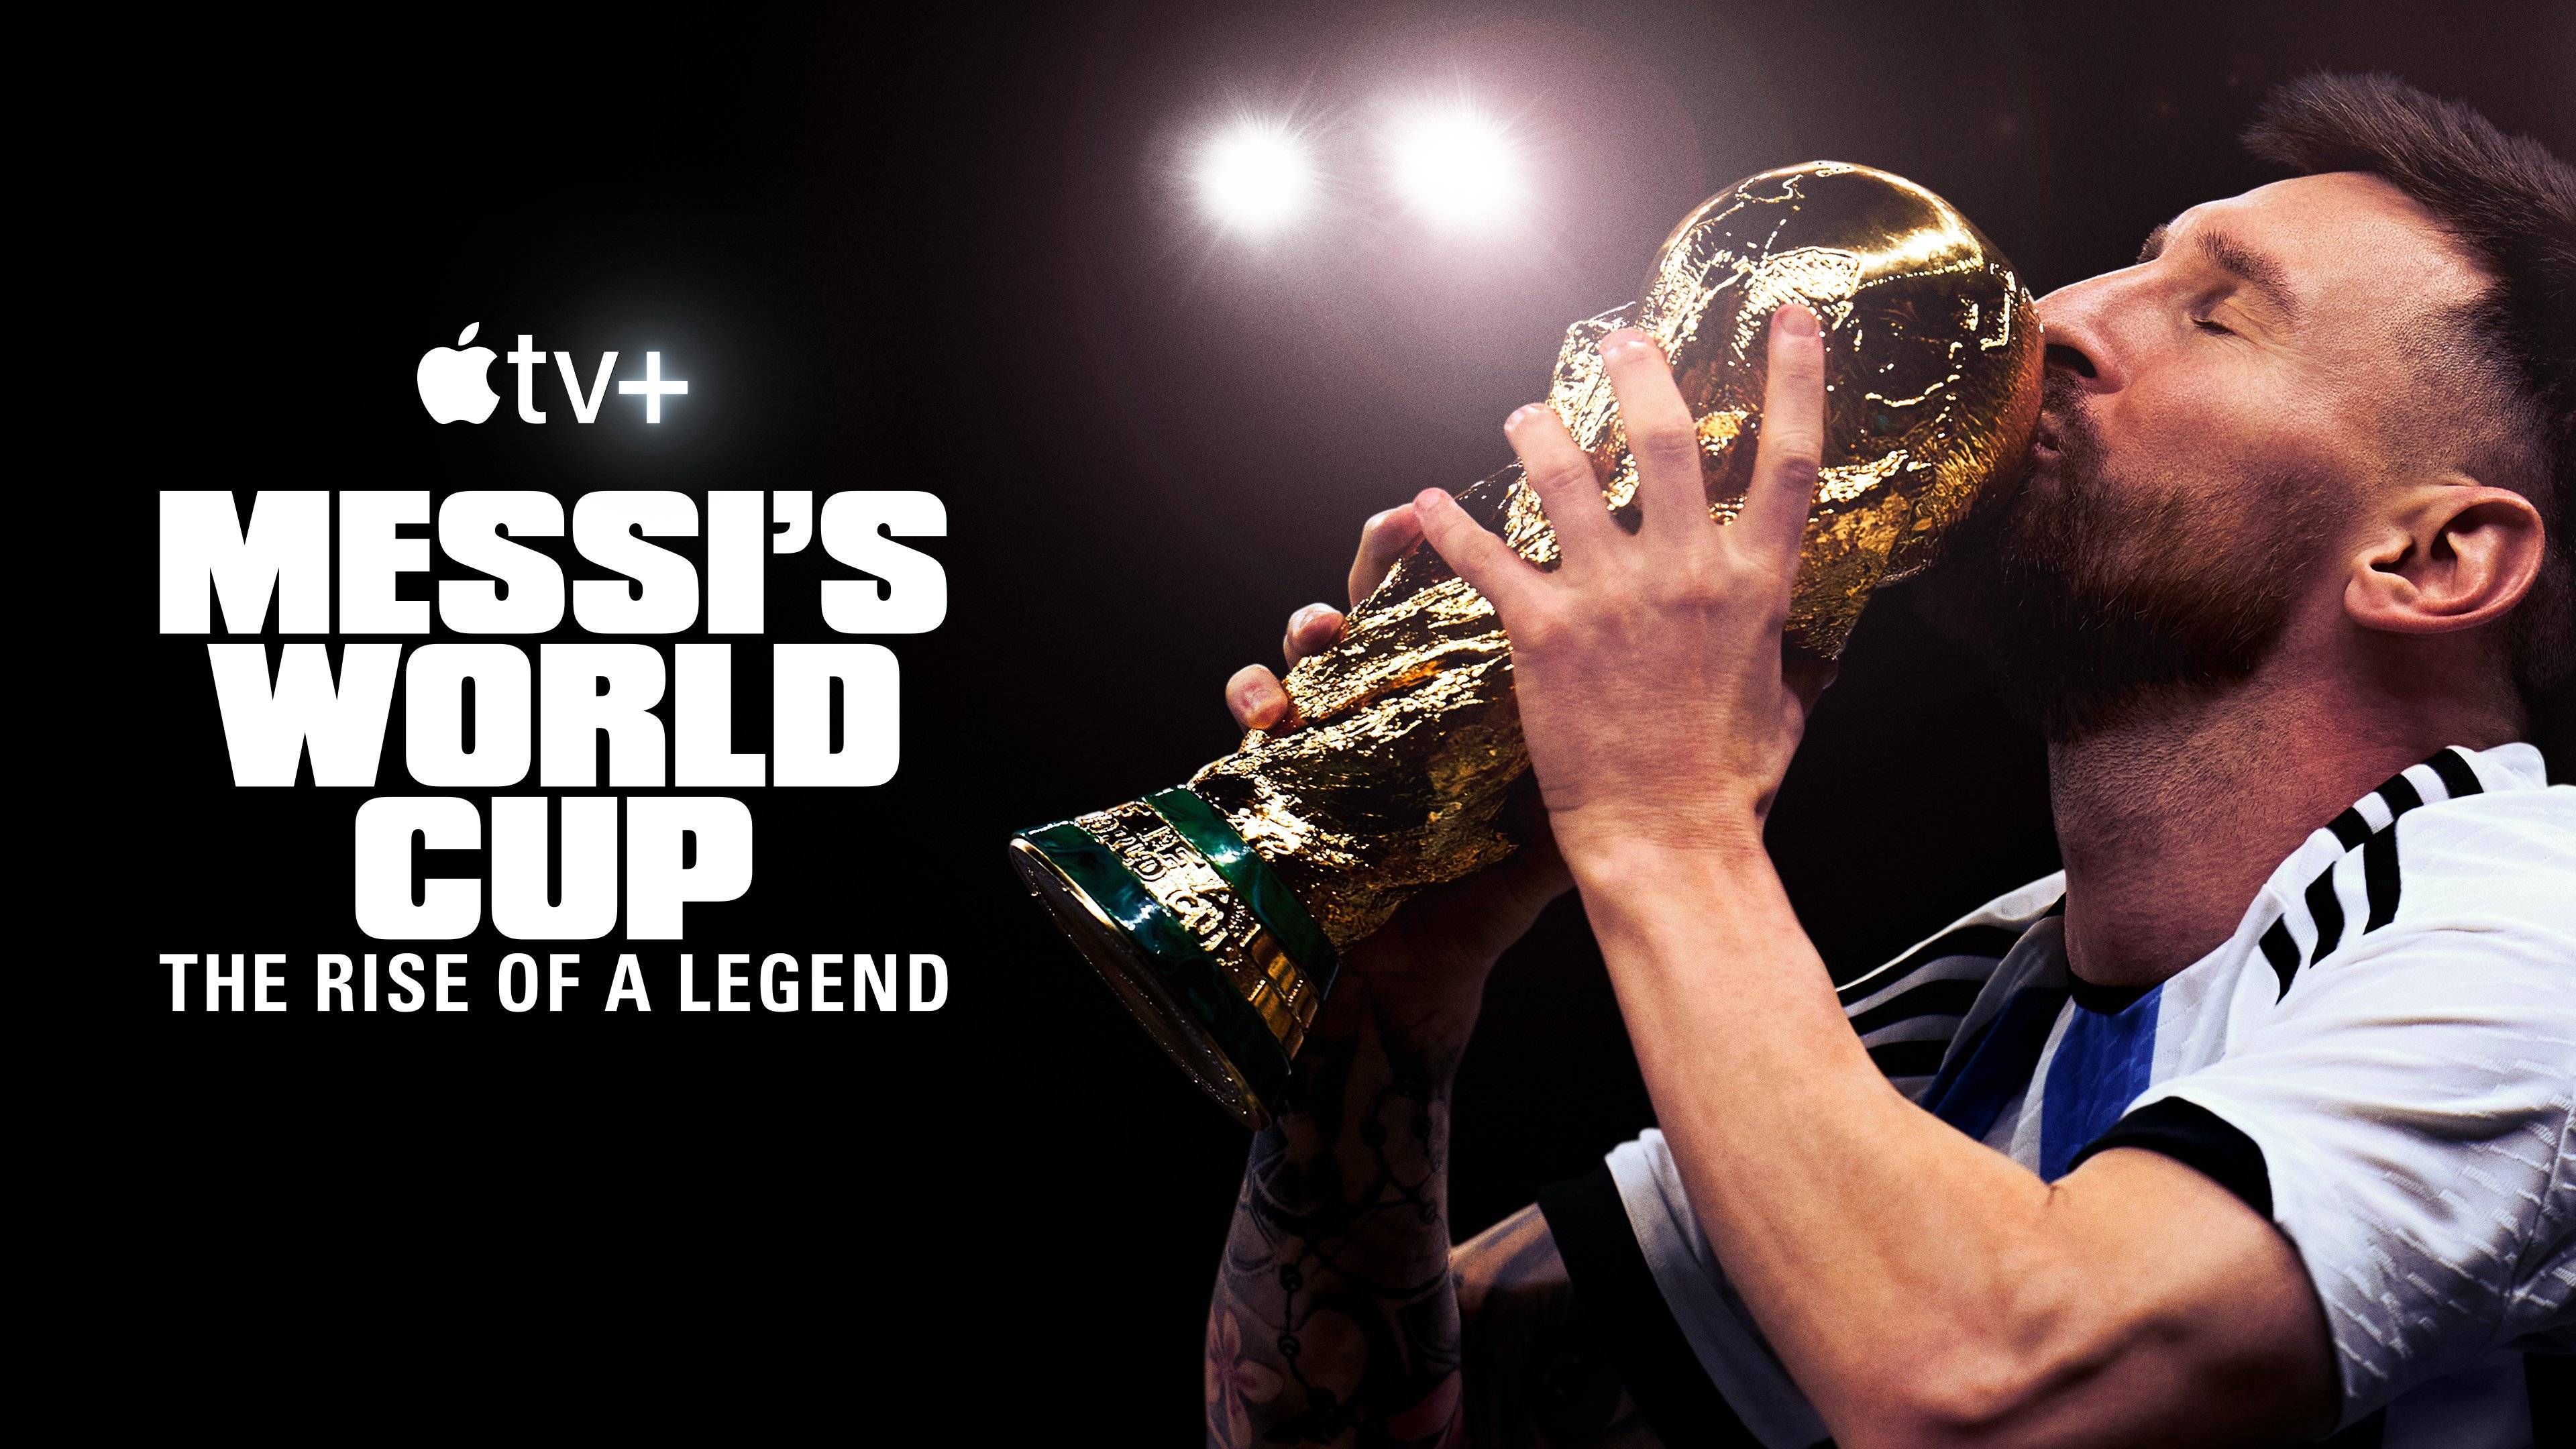 直播吧2月21日讯 据espn报道,梅西的新纪录片《梅西的世界杯:传奇的